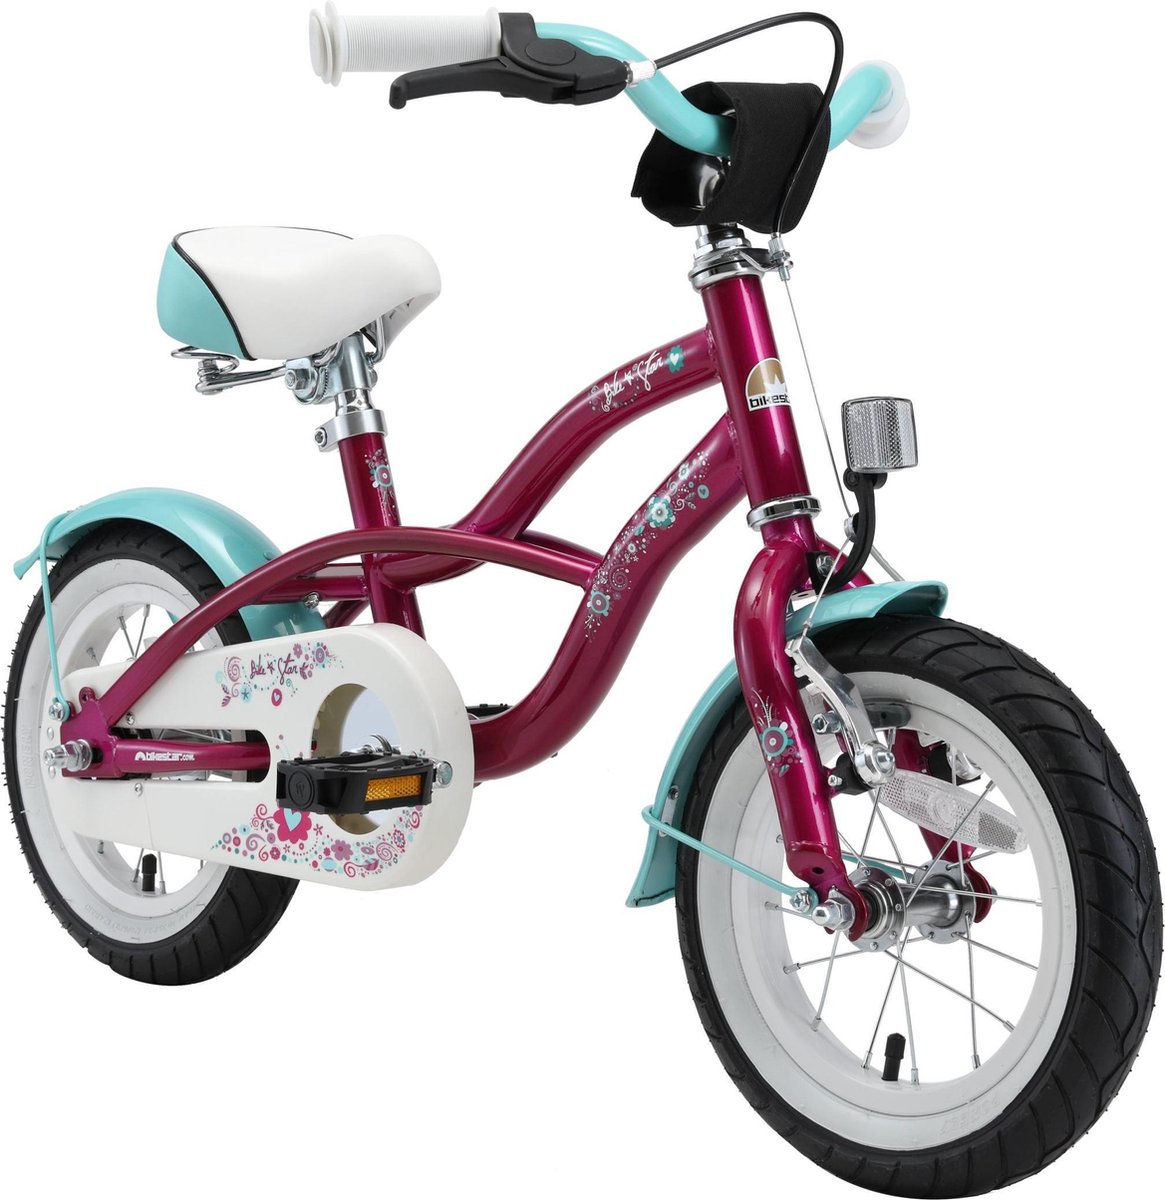 Bikestar 12 inch Cruiser kinderfiets lila